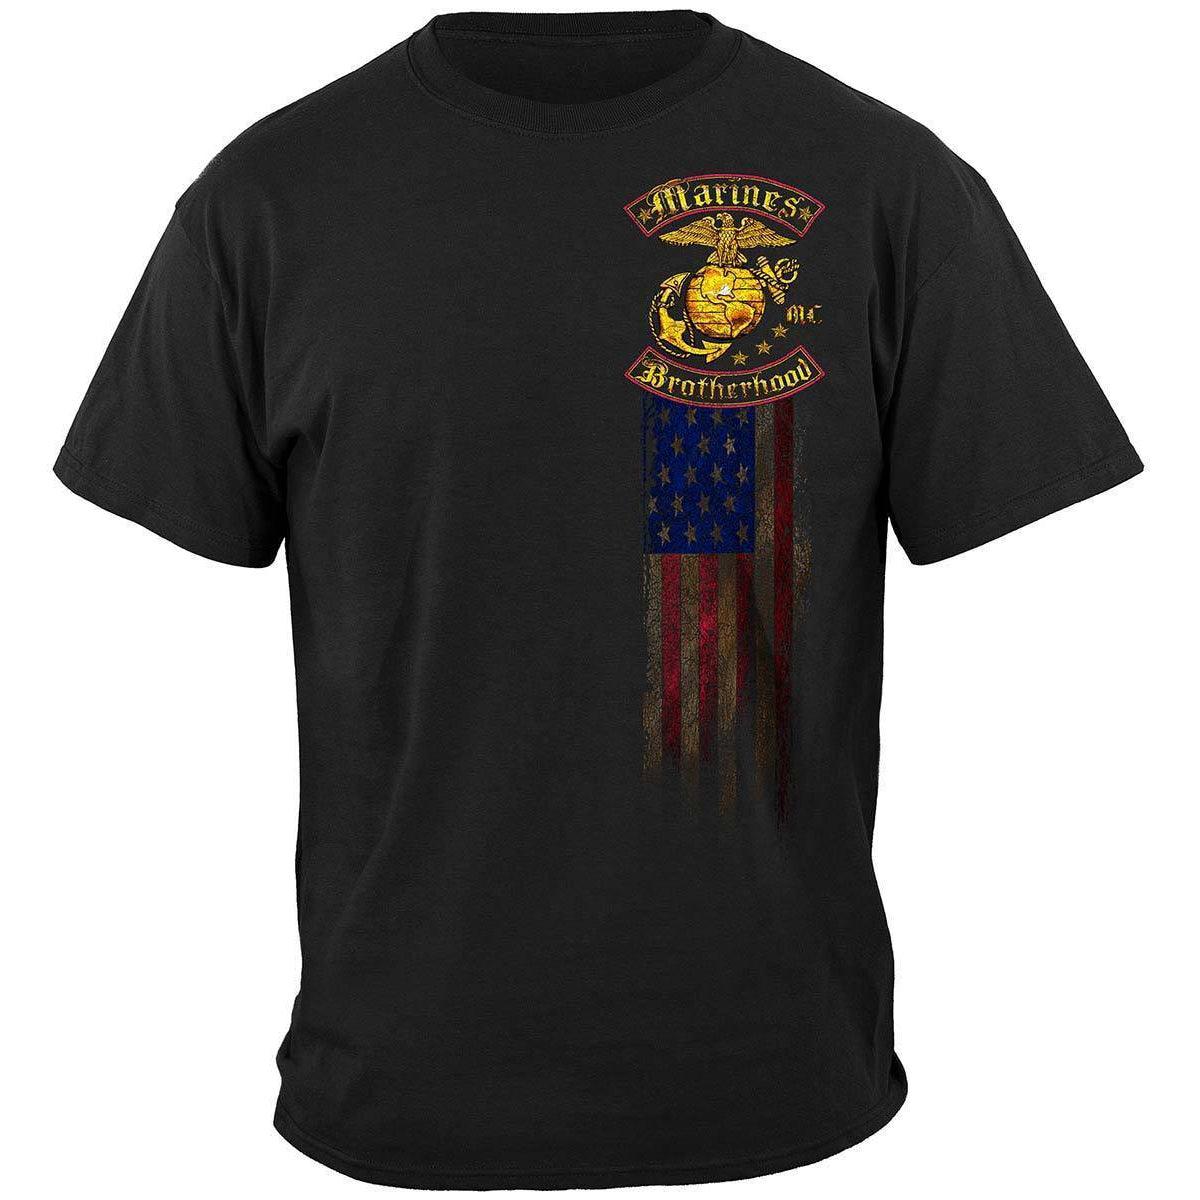 Compra Camiseta US Marines Brass Logo Semper Fidelis Patriotic